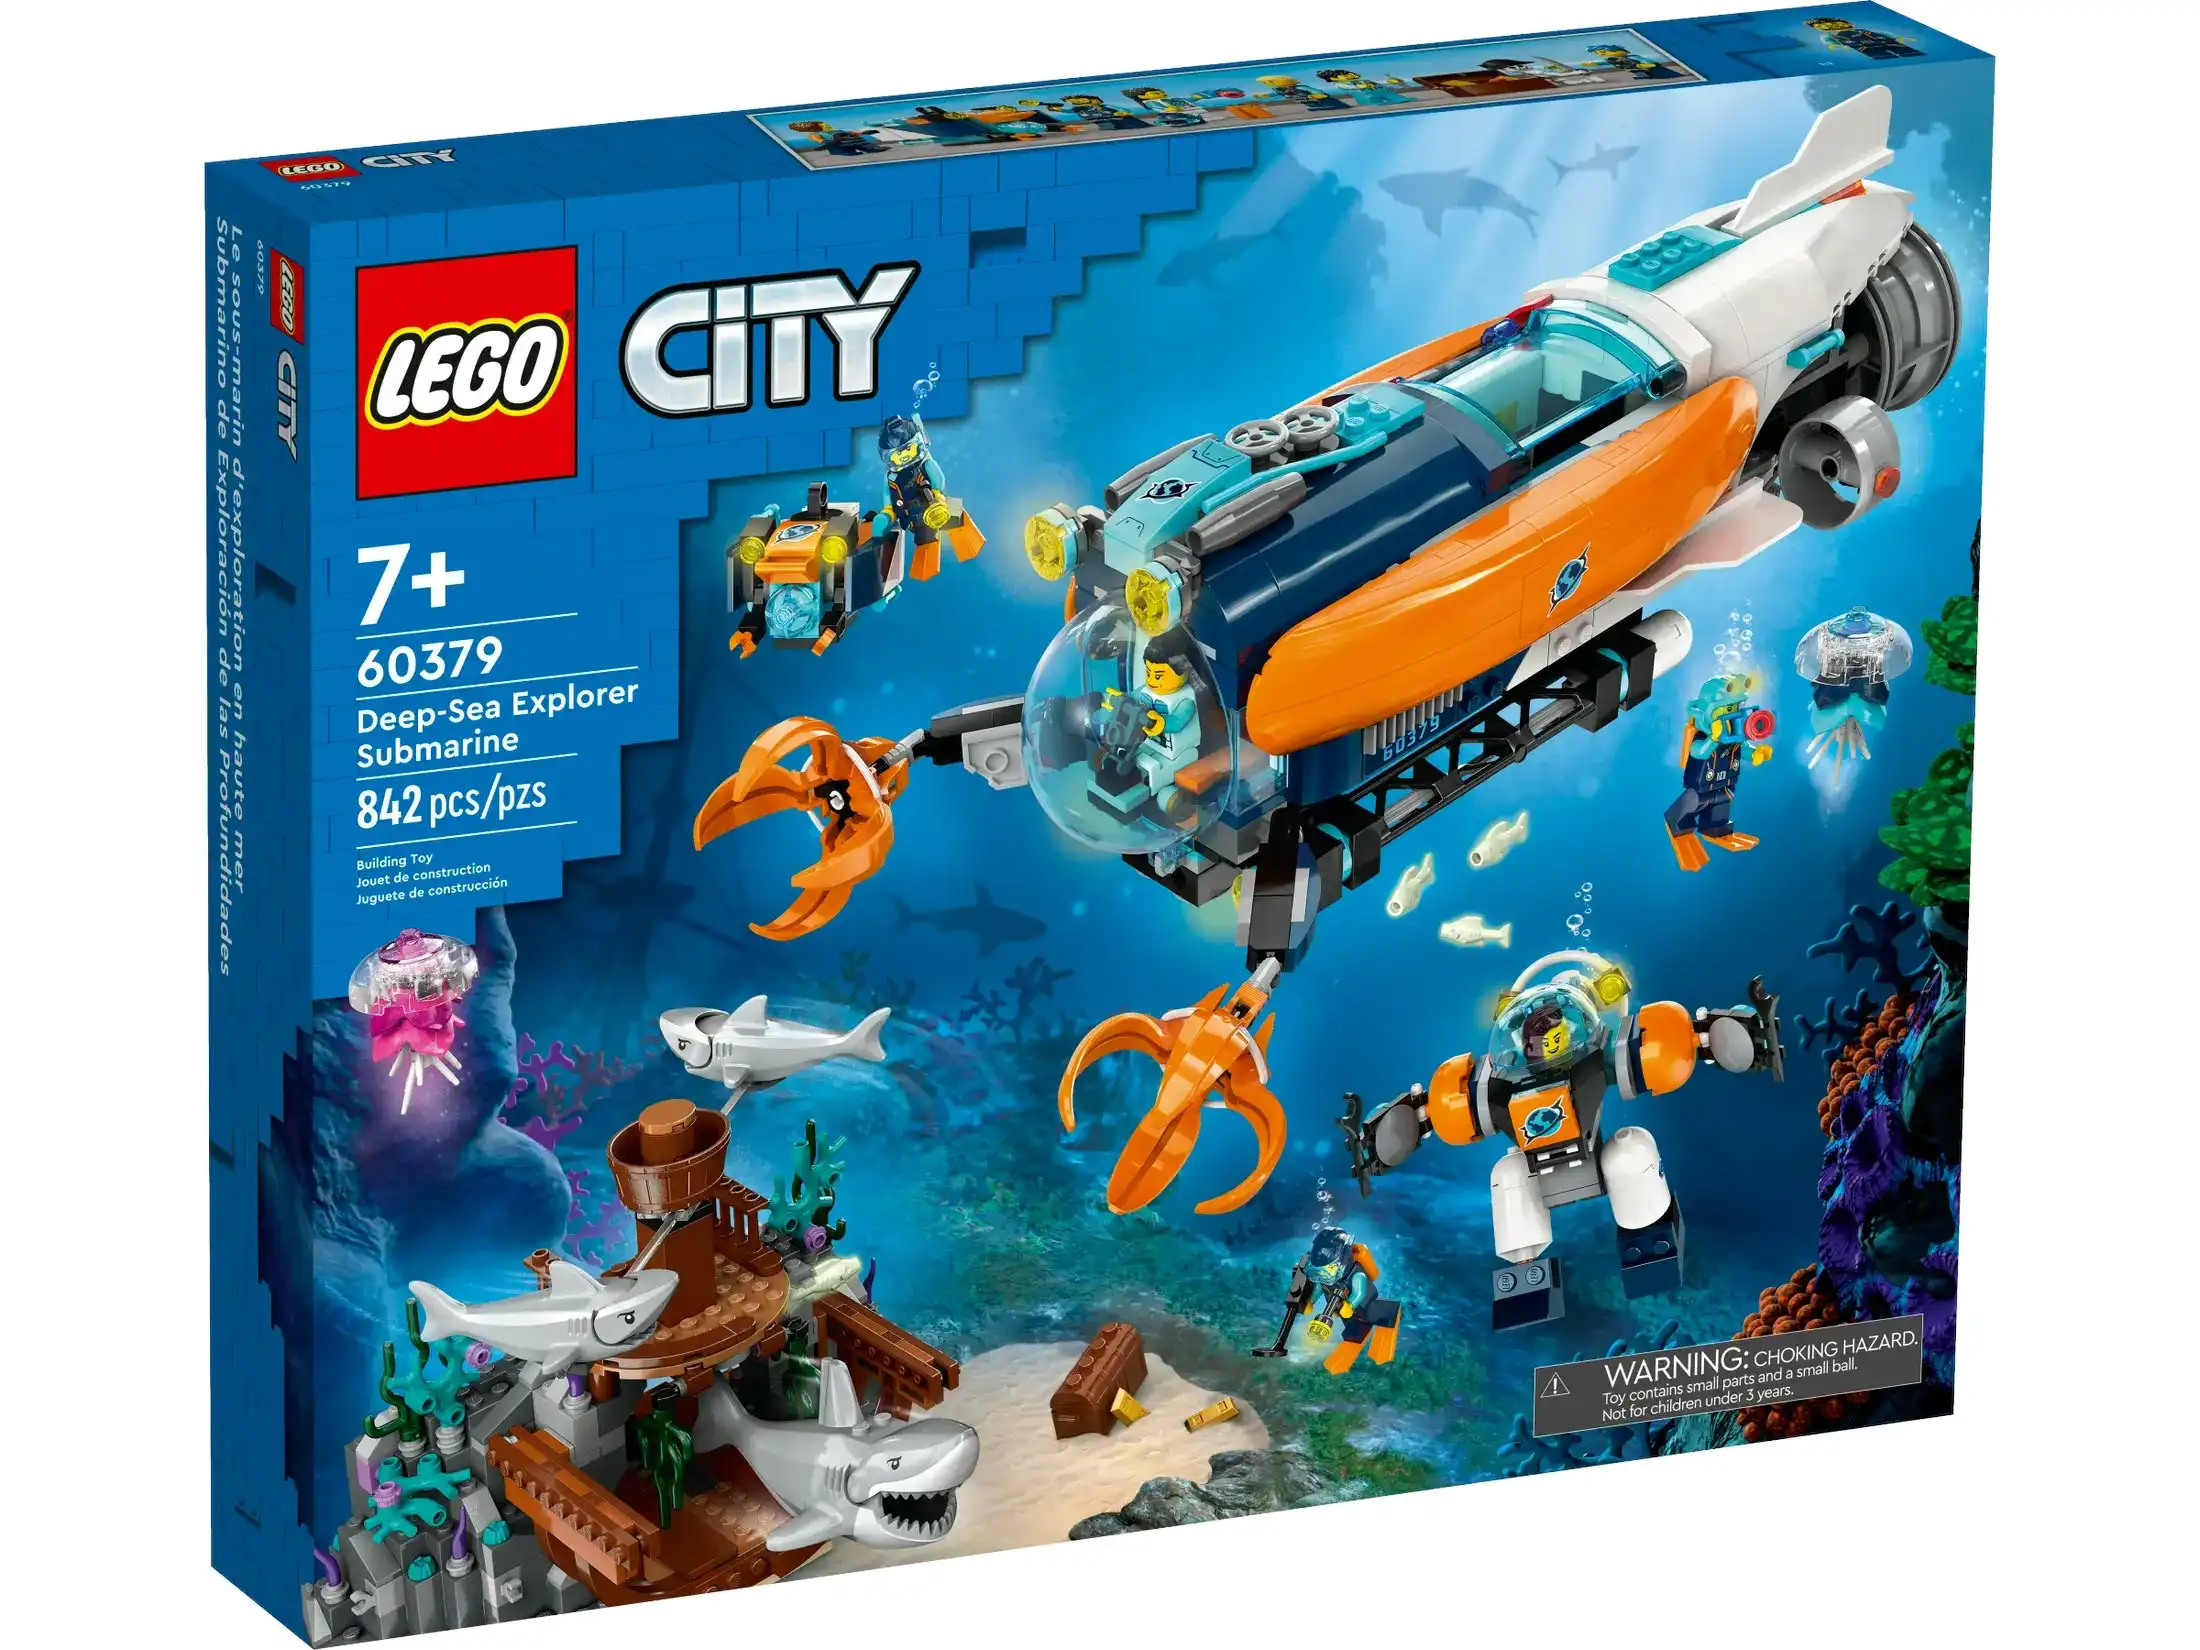 LEGO 60379 Deep-Sea Explorer Submarine - City